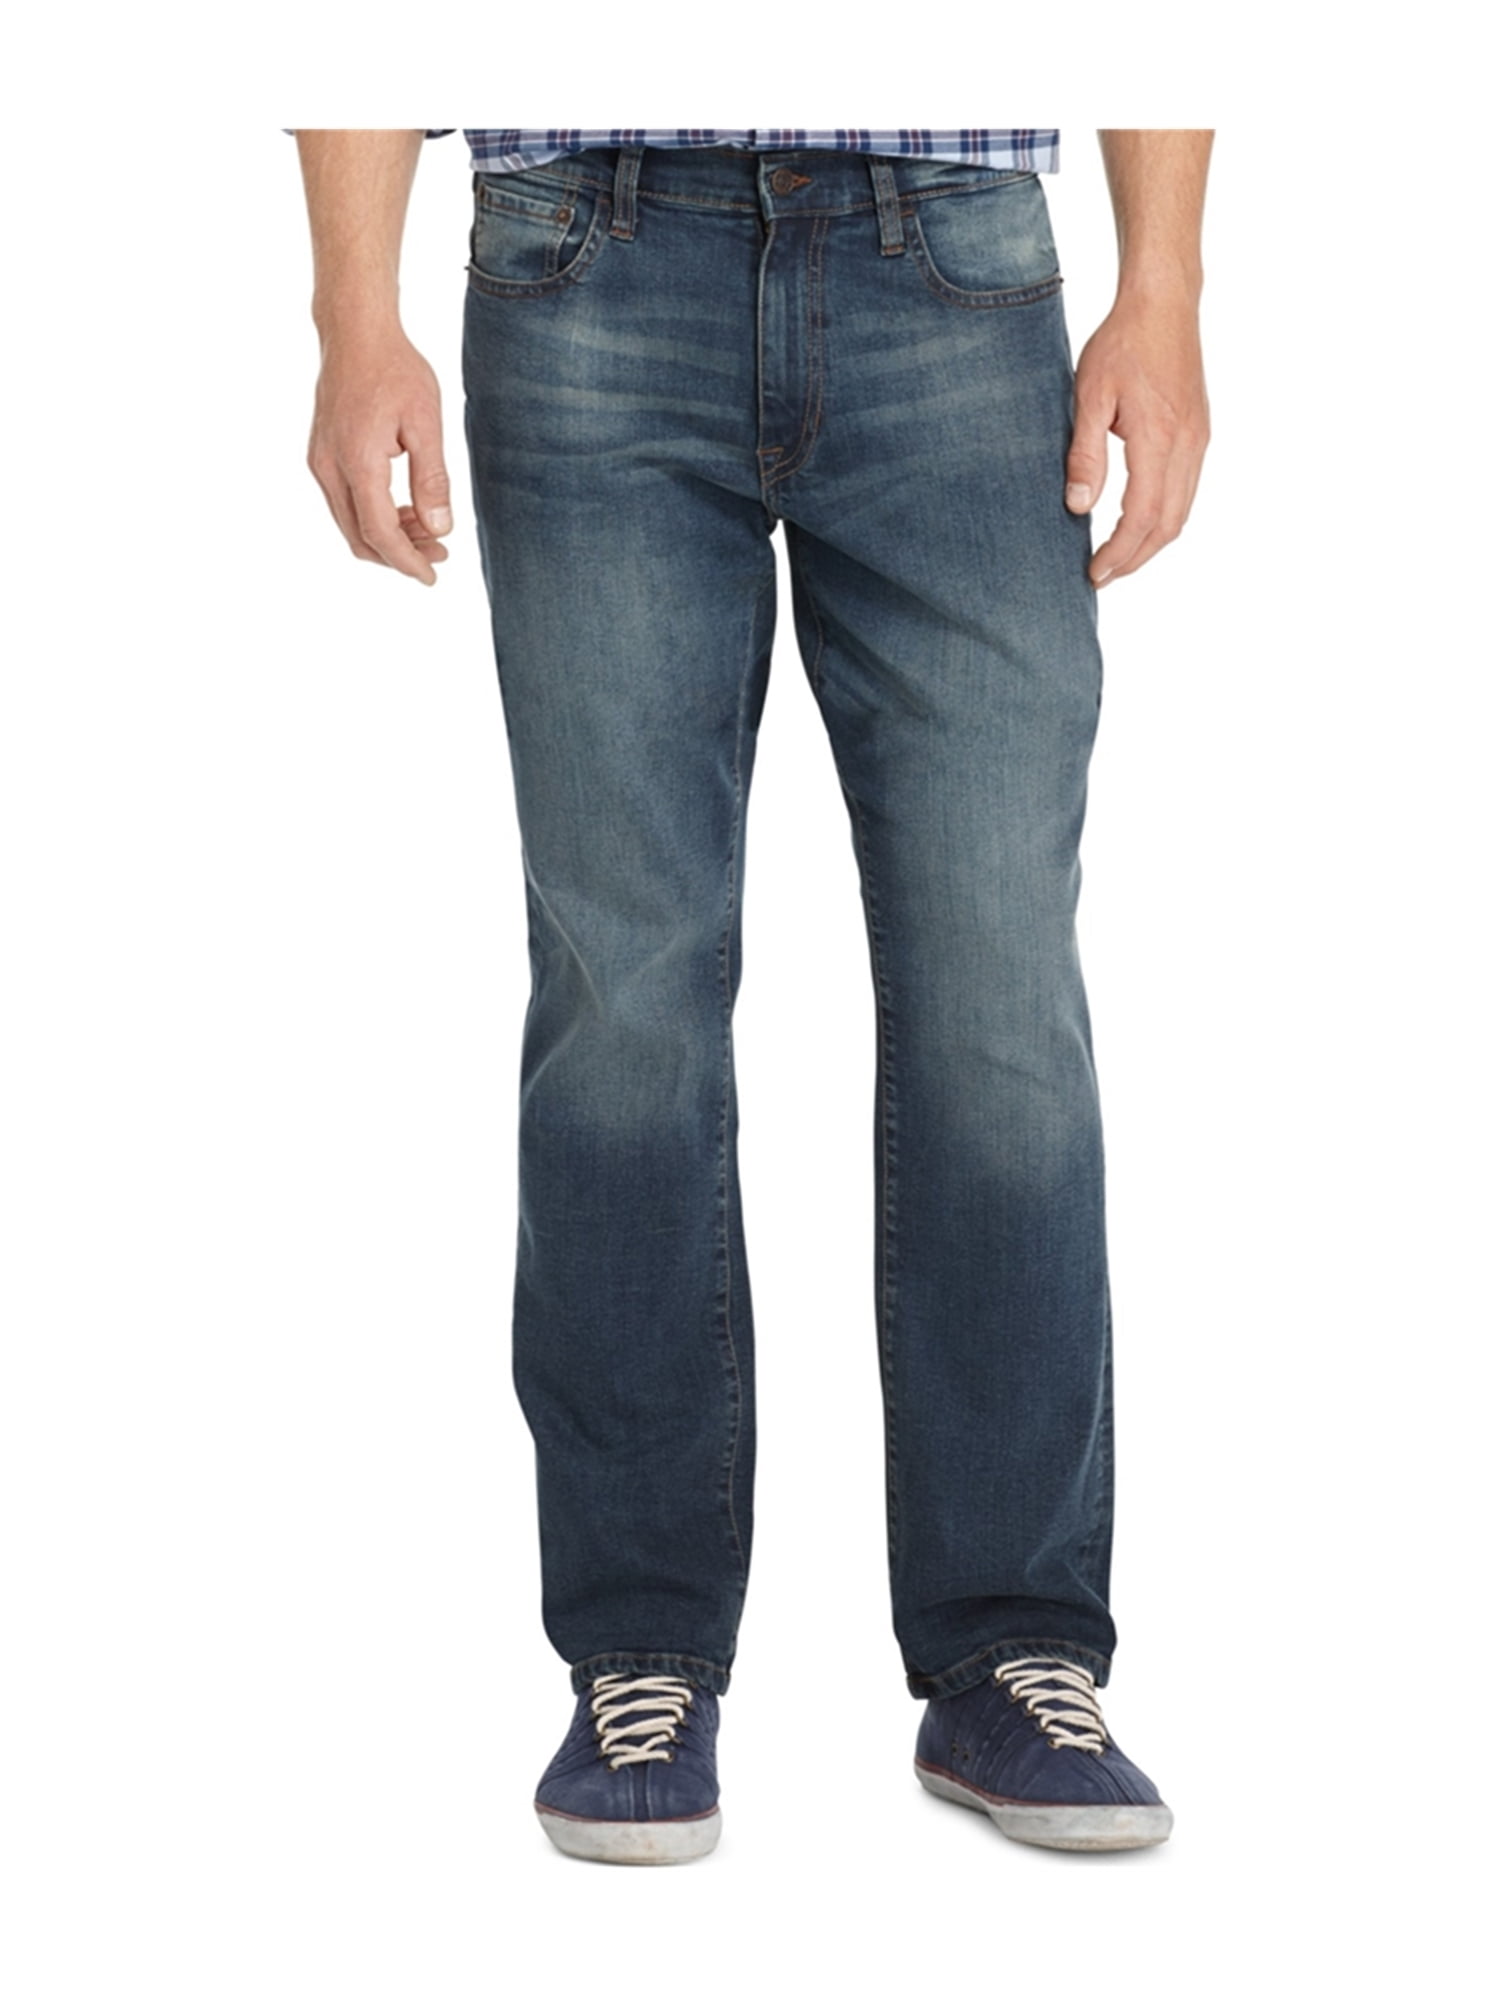 IZOD Mens Comfort Relaxed Jeans - Walmart.com